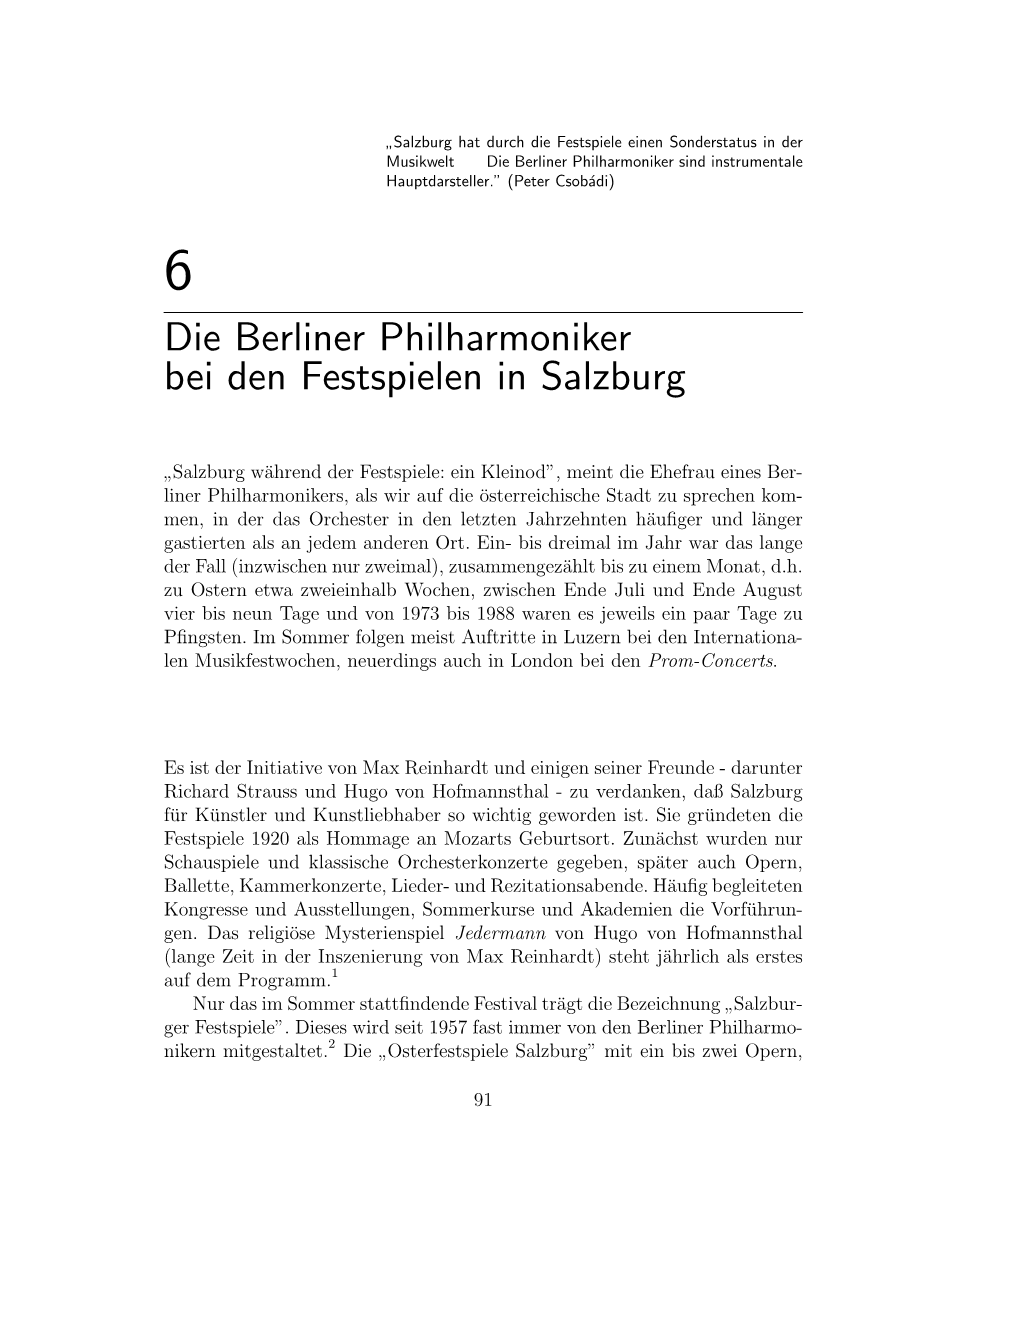 Die Berliner Philharmoniker Bei Den Festspielen in Salzburg